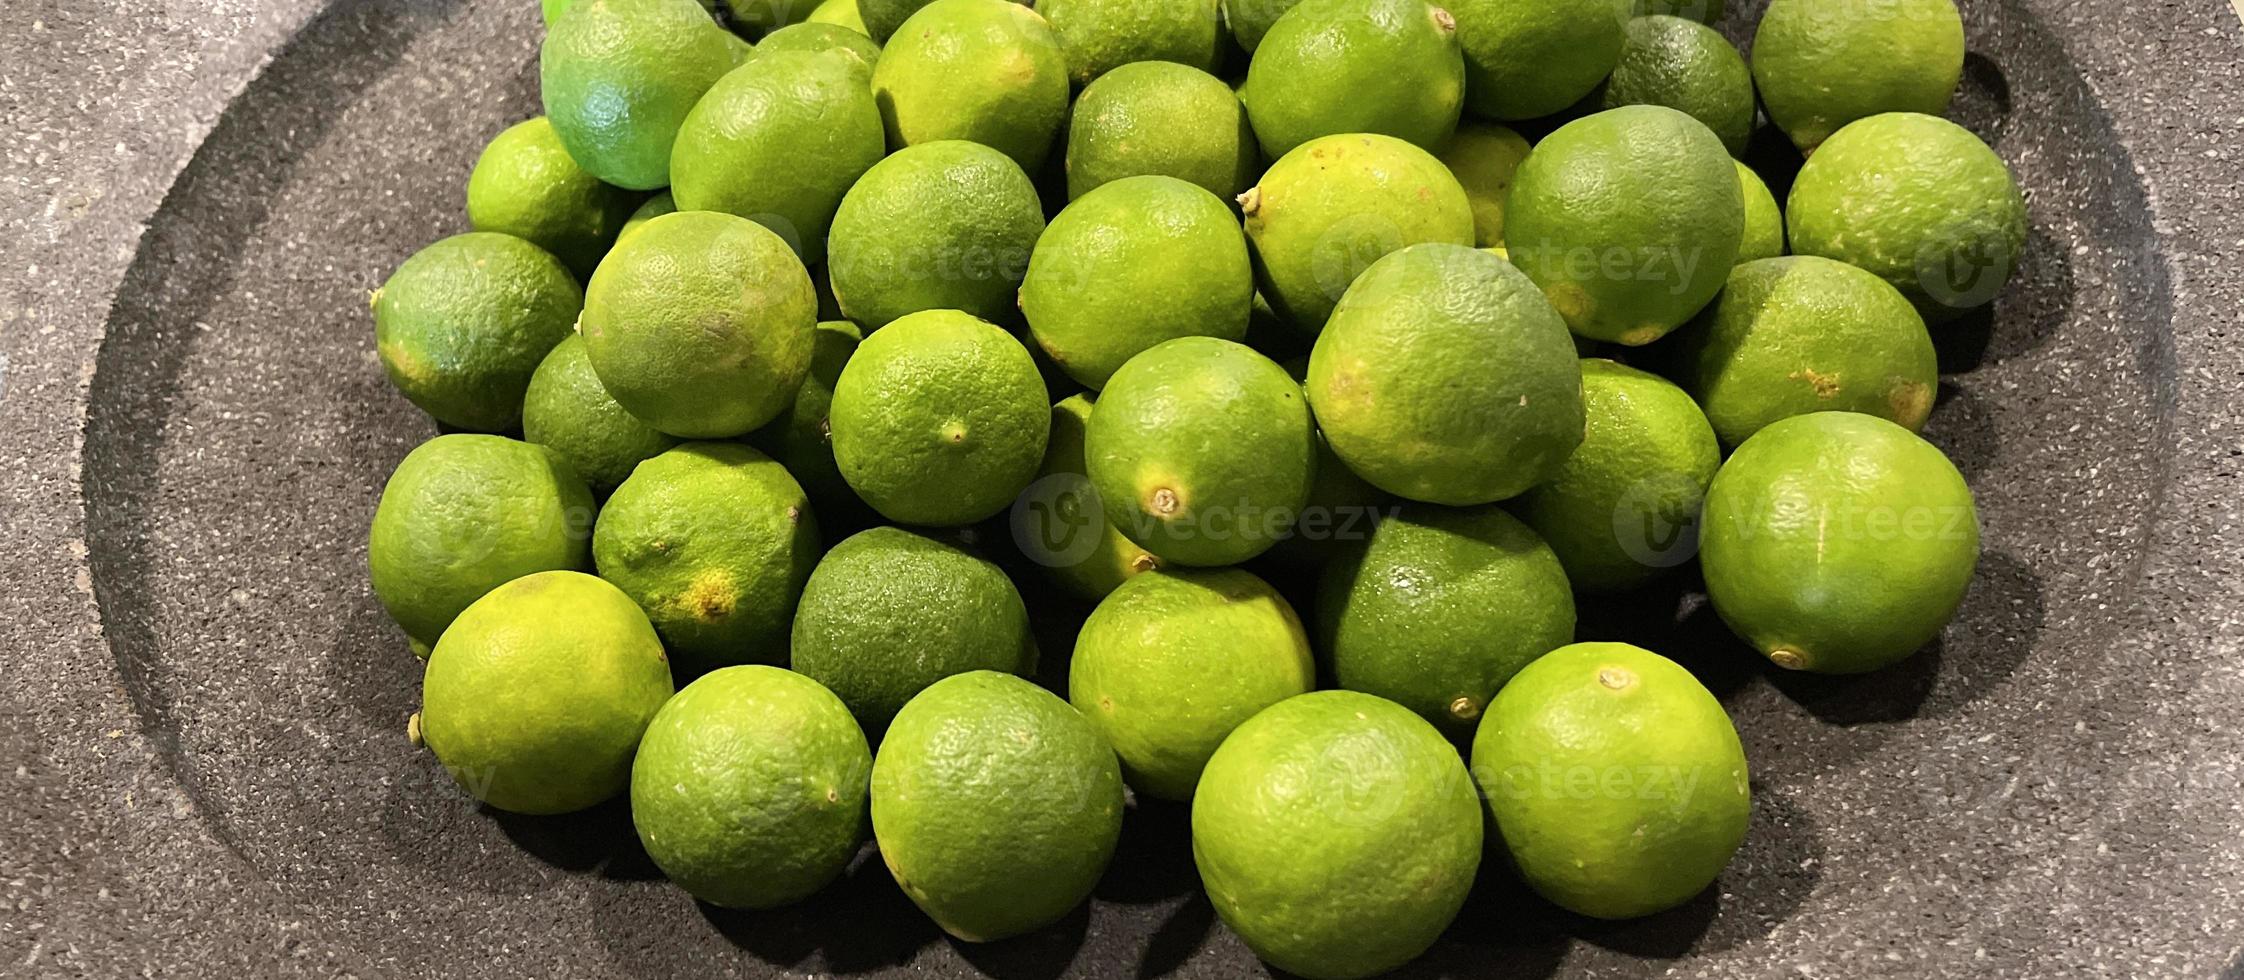 kalk citrus- frukt i frukt marknadsföra foto